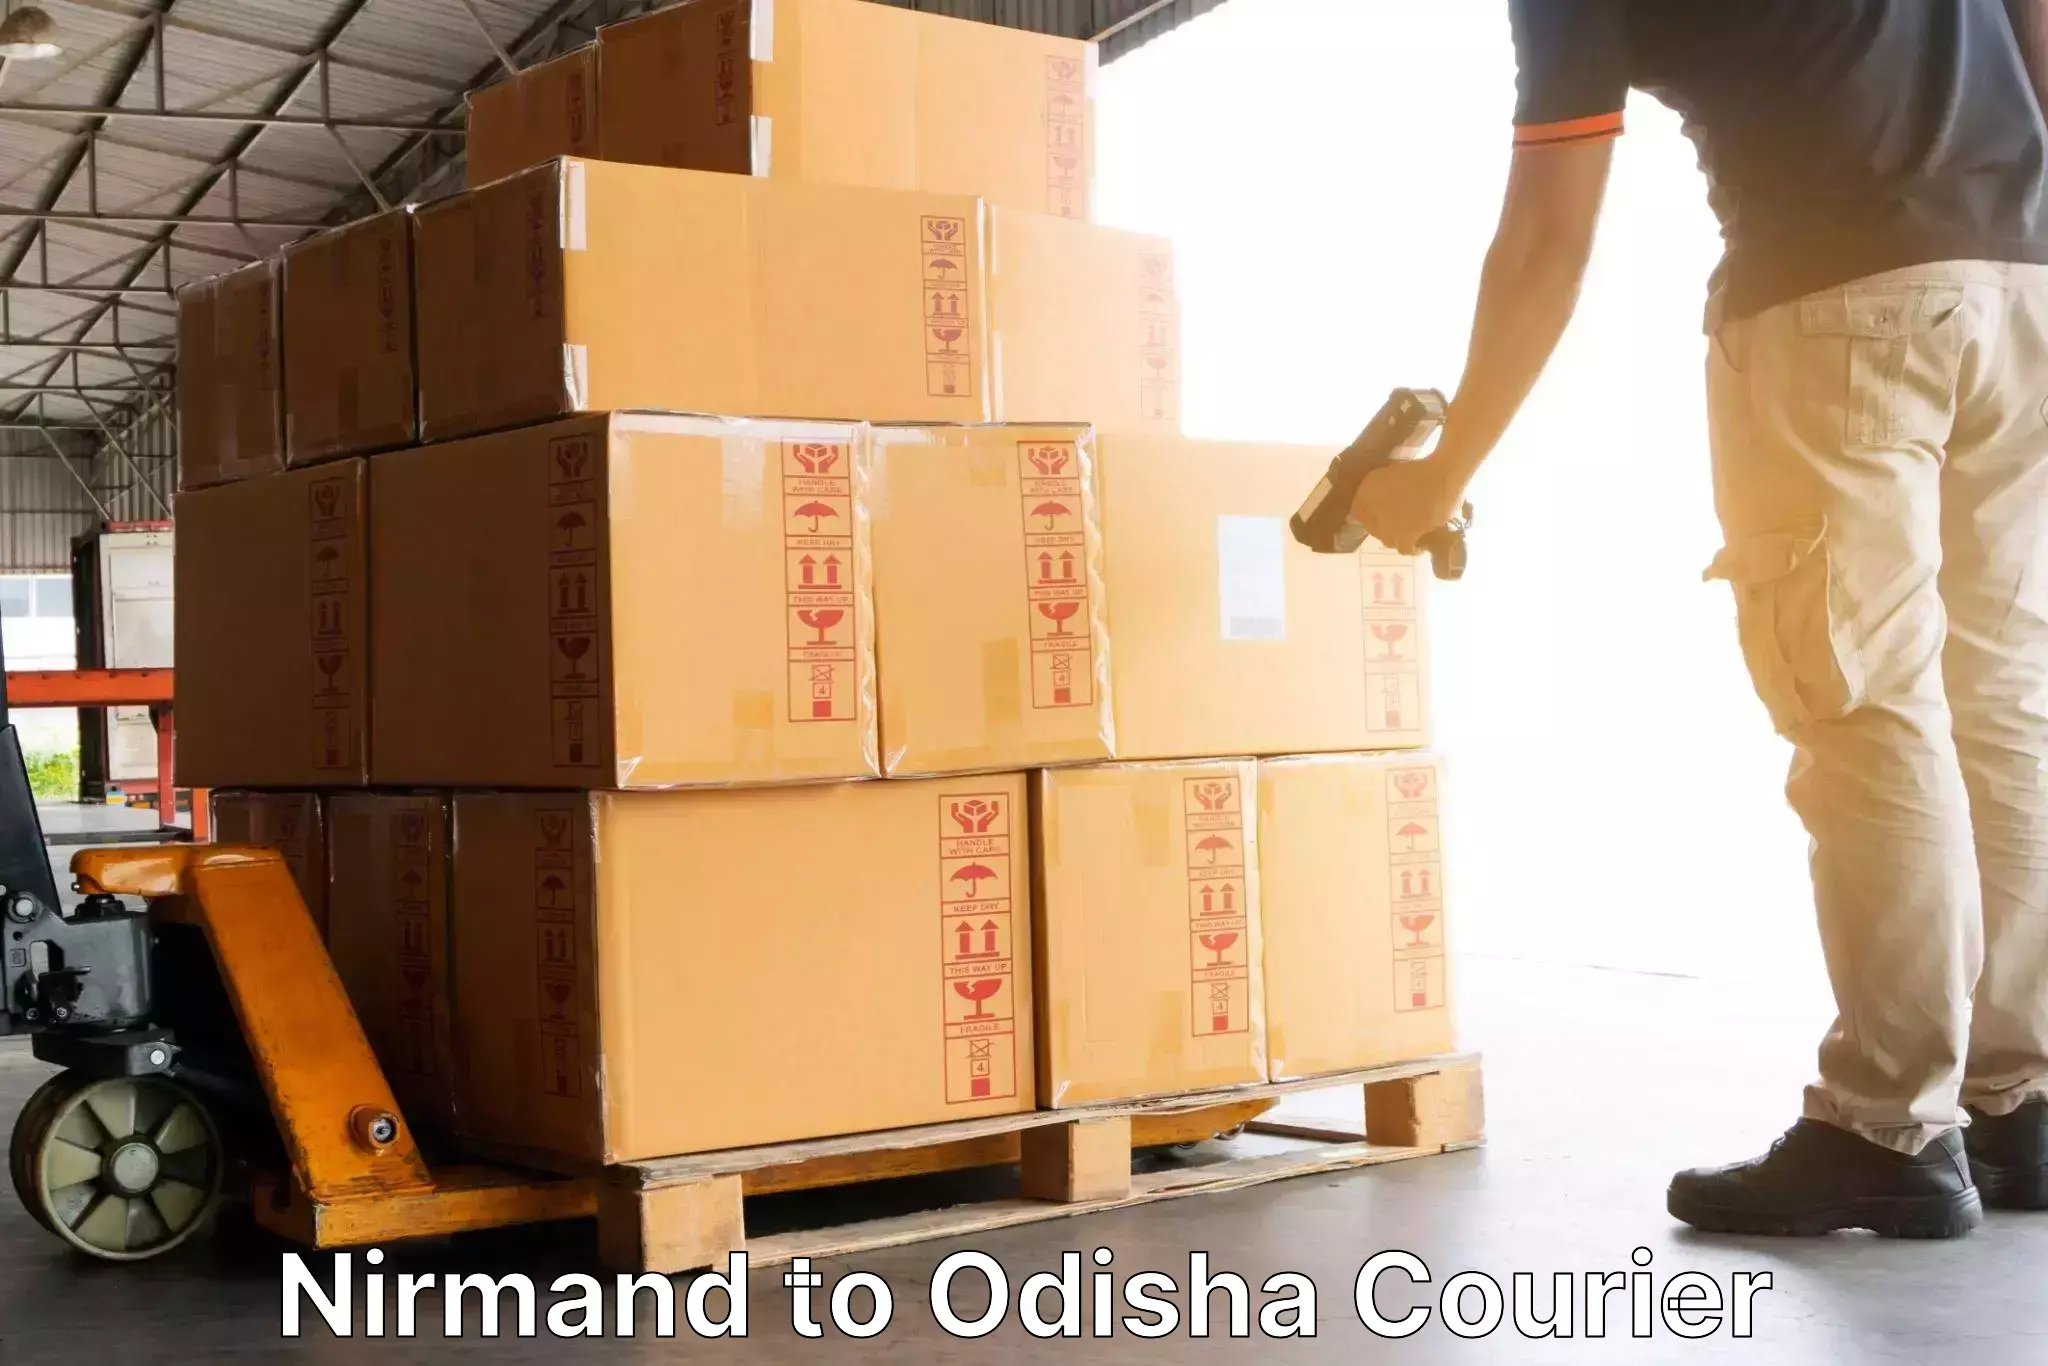 On-demand shipping options Nirmand to Agarpada